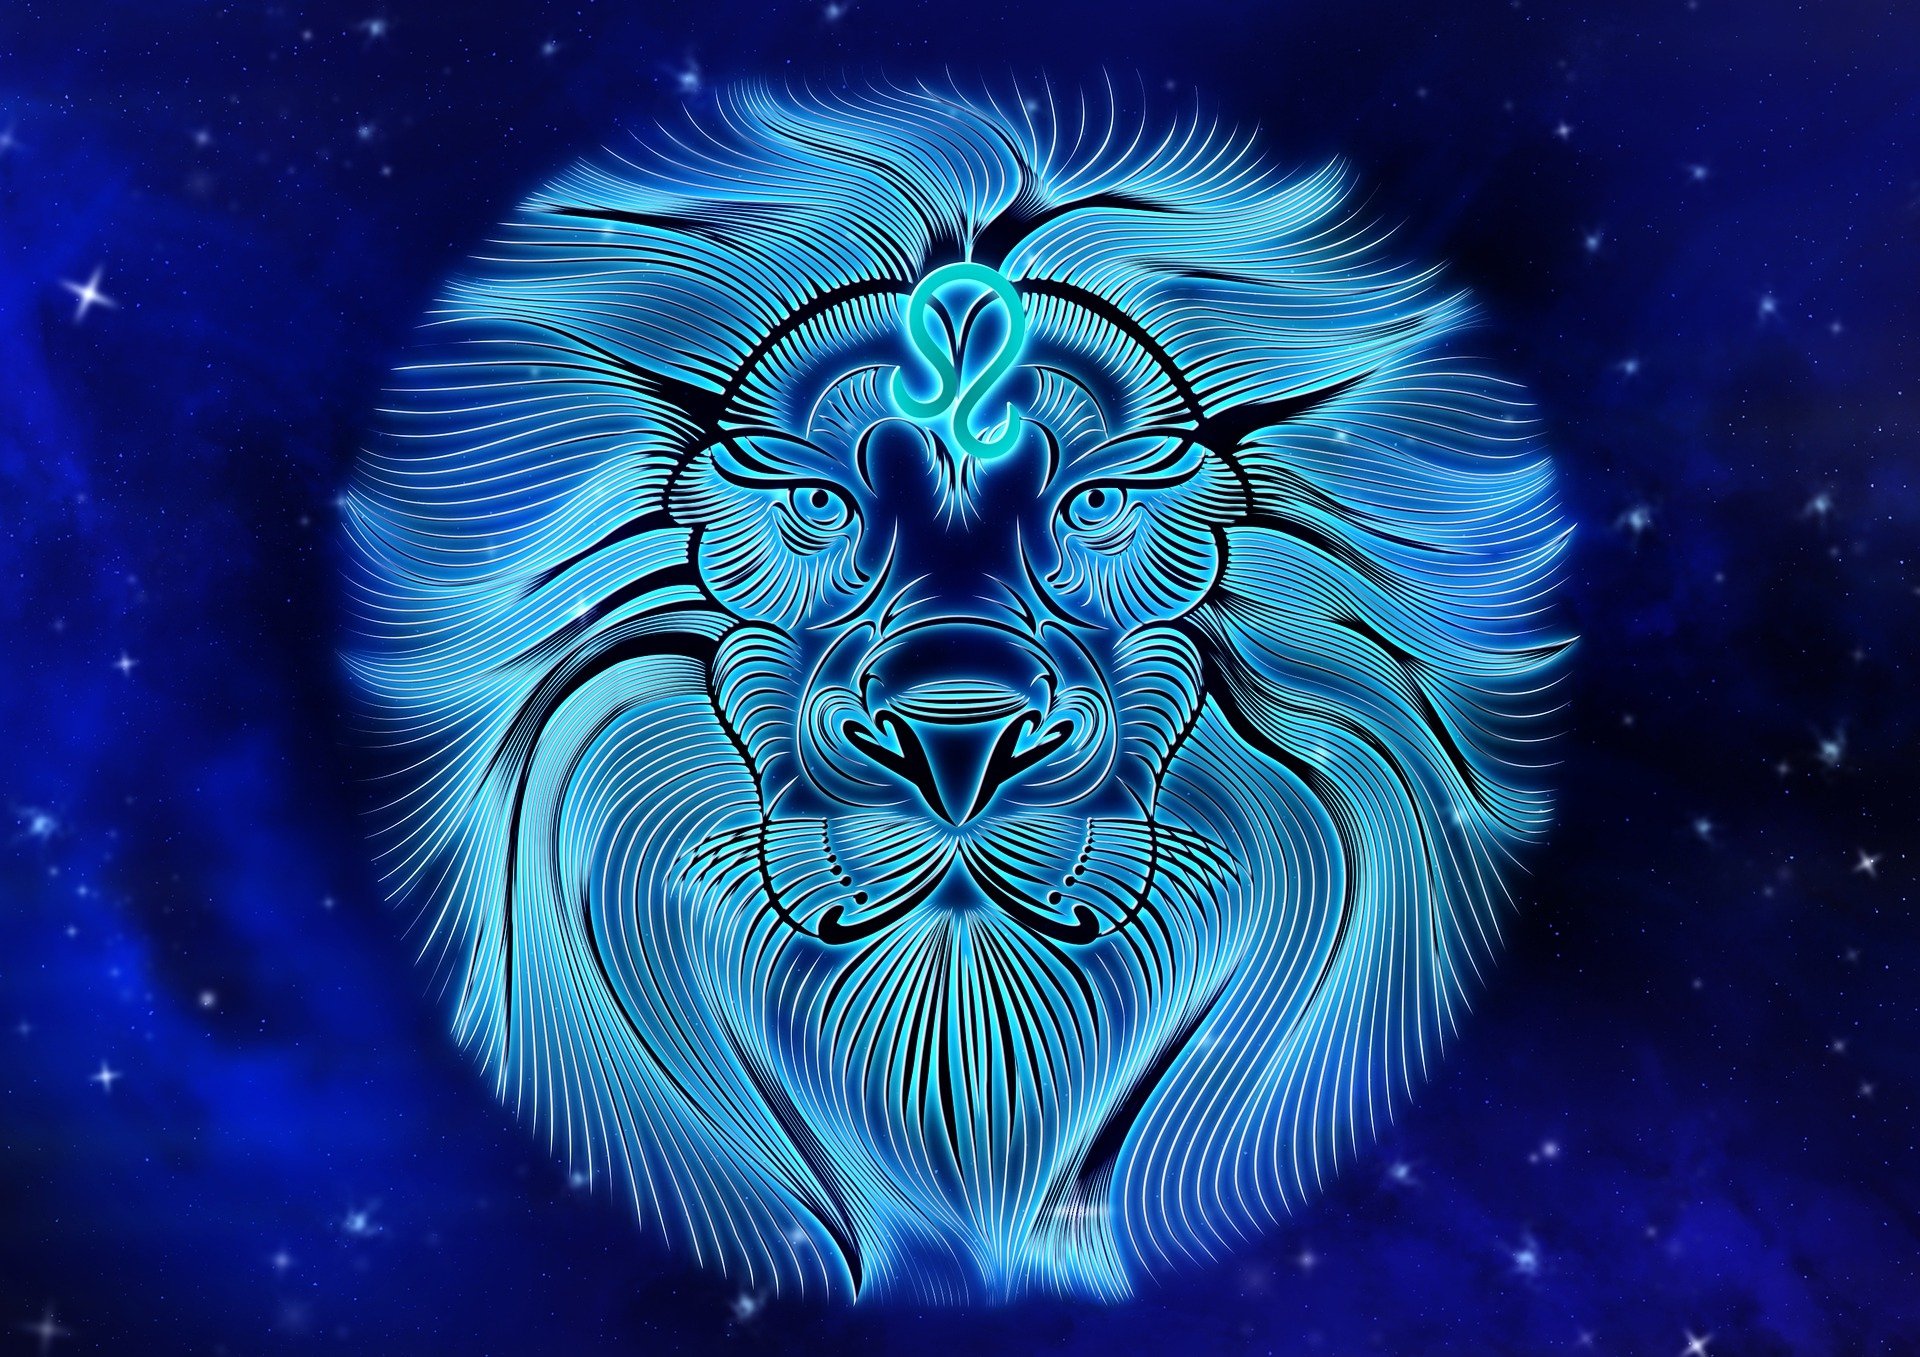 Blue Leo the Lion